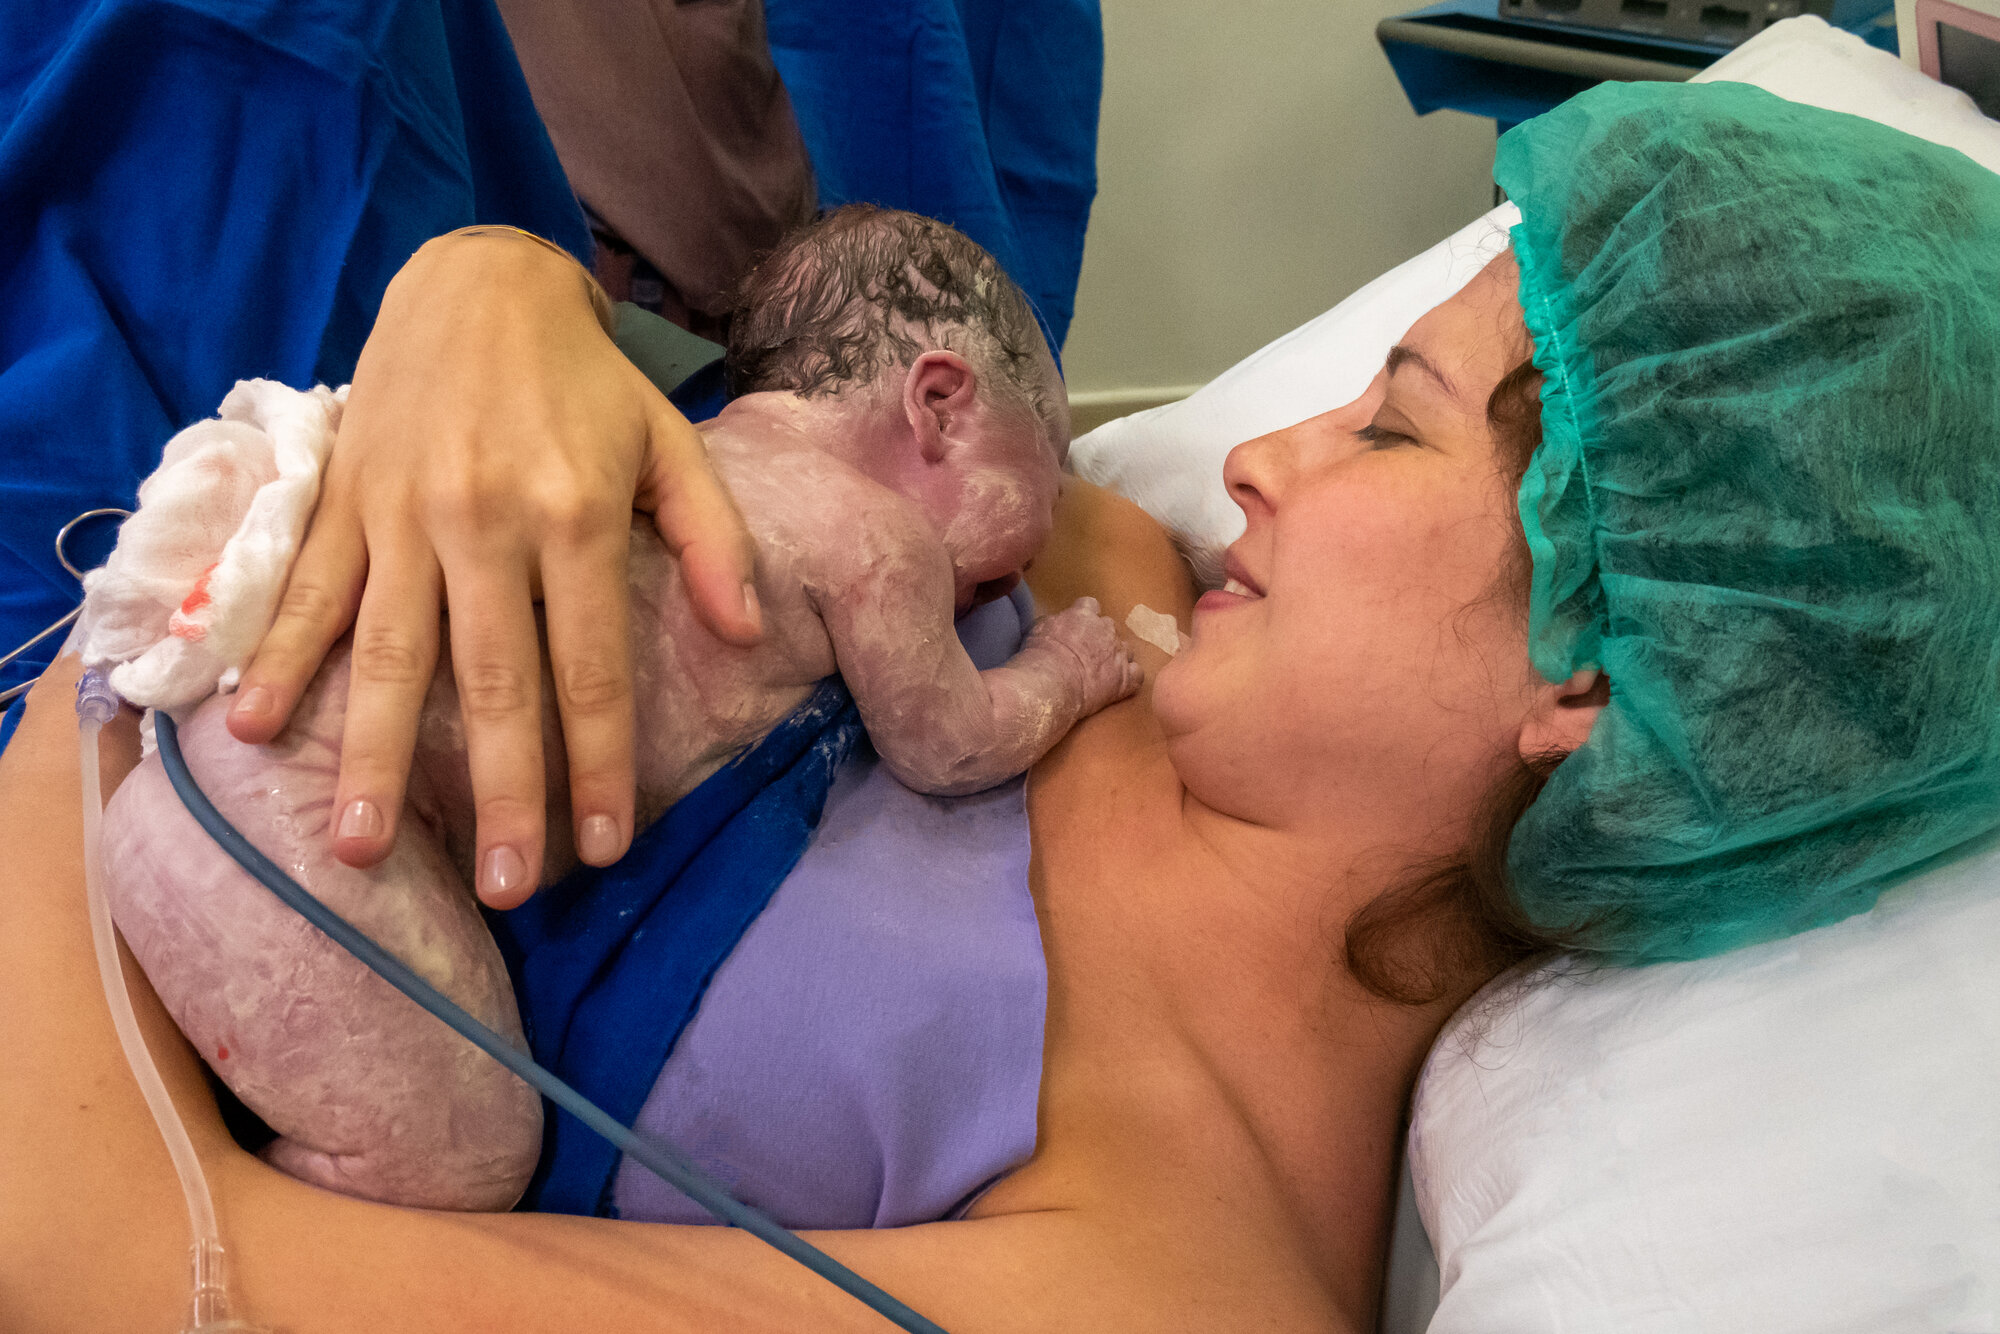 Bildet viser en nyfødt baby som ligger på brystet til moren